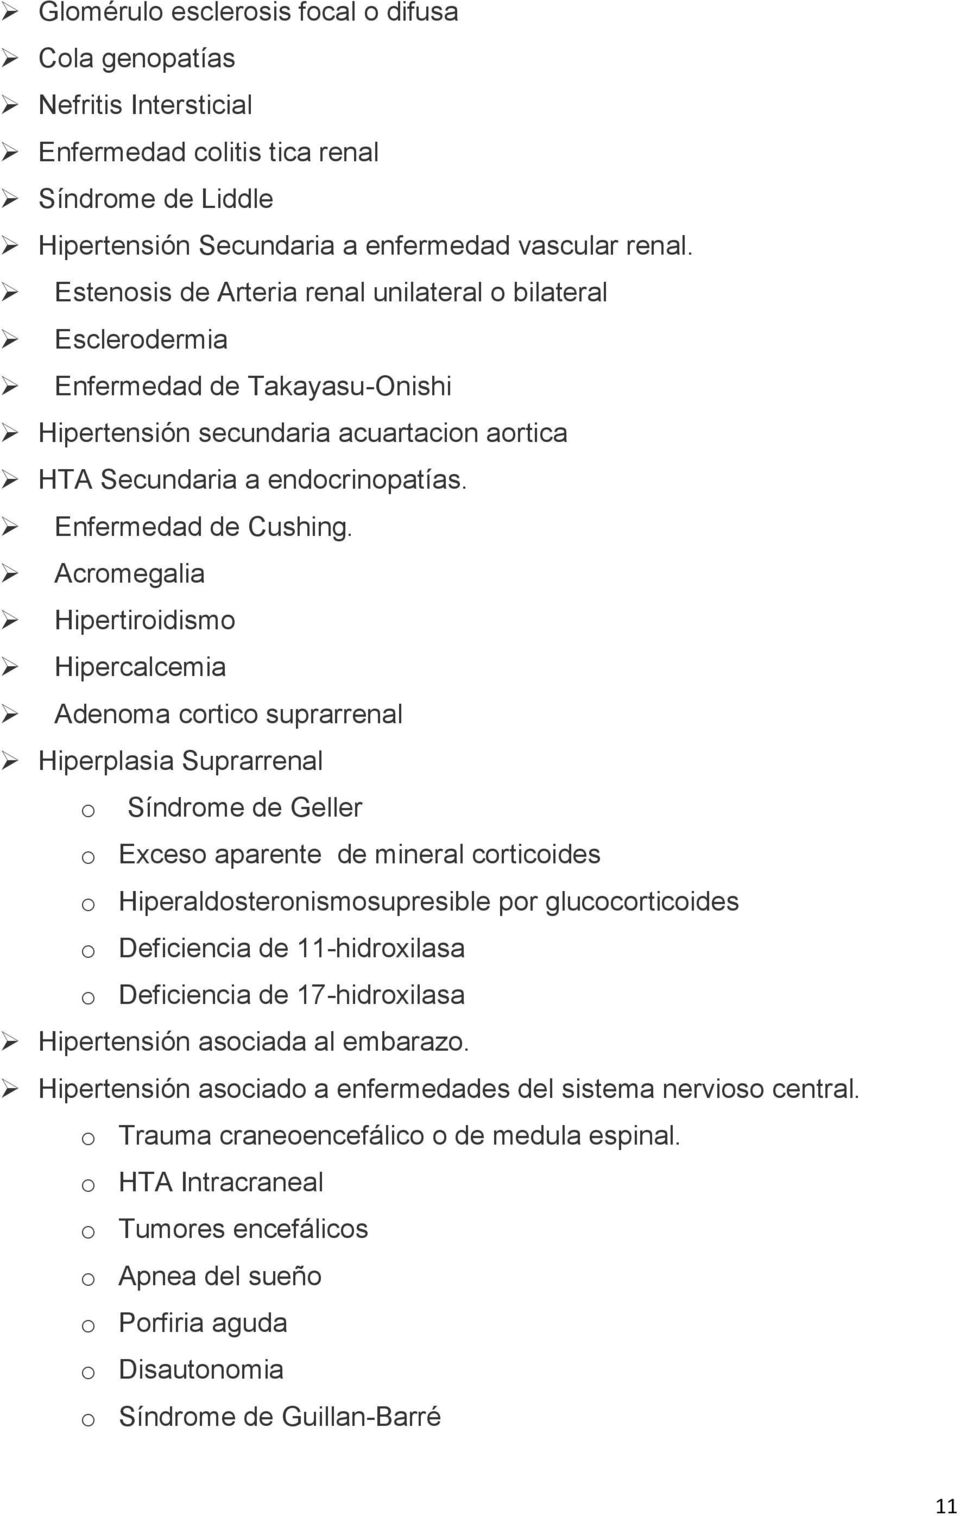 Acromegalia Hipertiroidismo Hipercalcemia Adenoma cortico suprarrenal Hiperplasia Suprarrenal o Síndrome de Geller o Exceso aparente de mineral corticoides o Hiperaldosteronismosupresible por